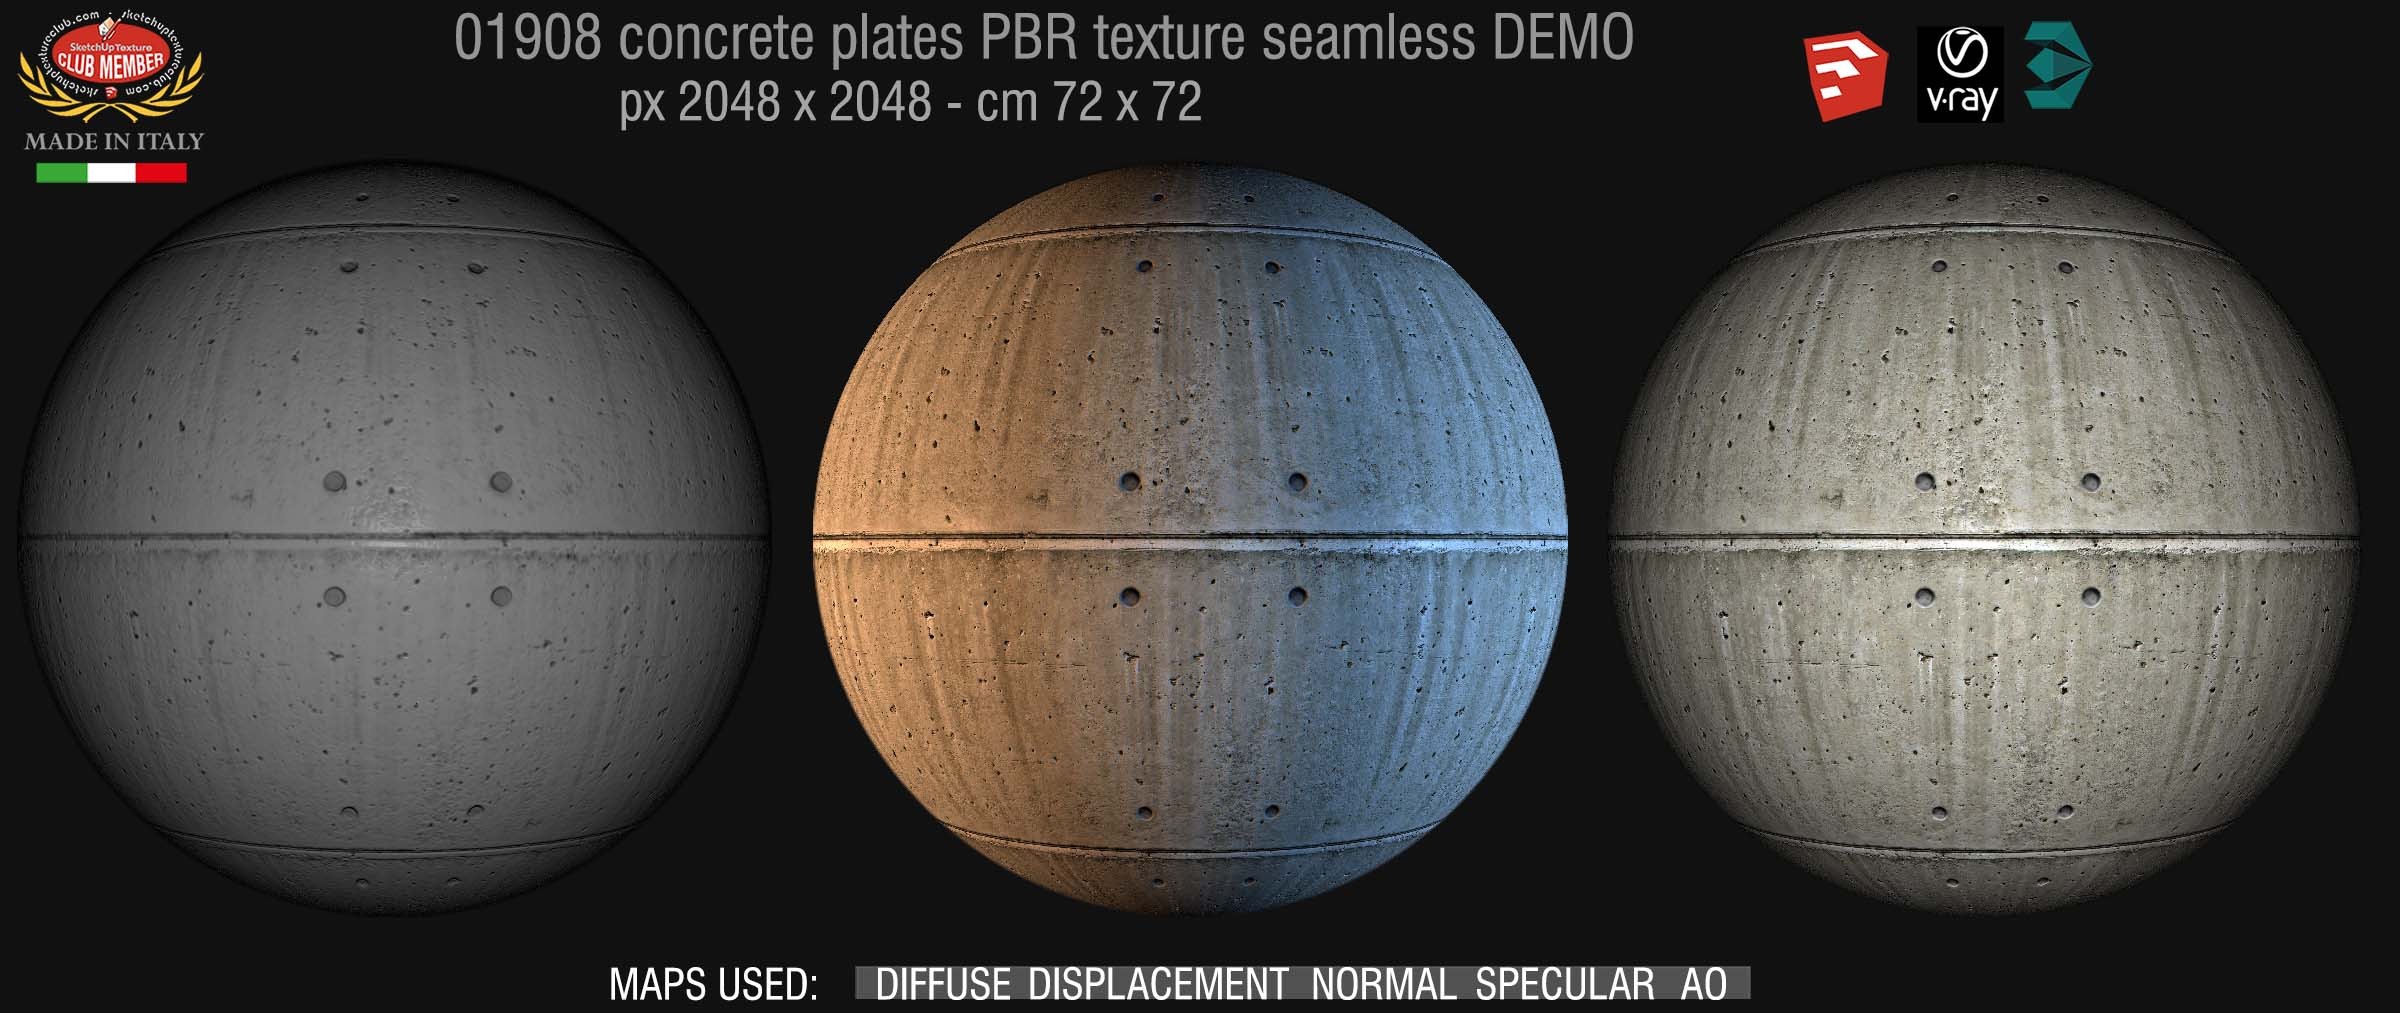 01908 Tadao ando concrete dirty plates PBR seamless texture DEMO